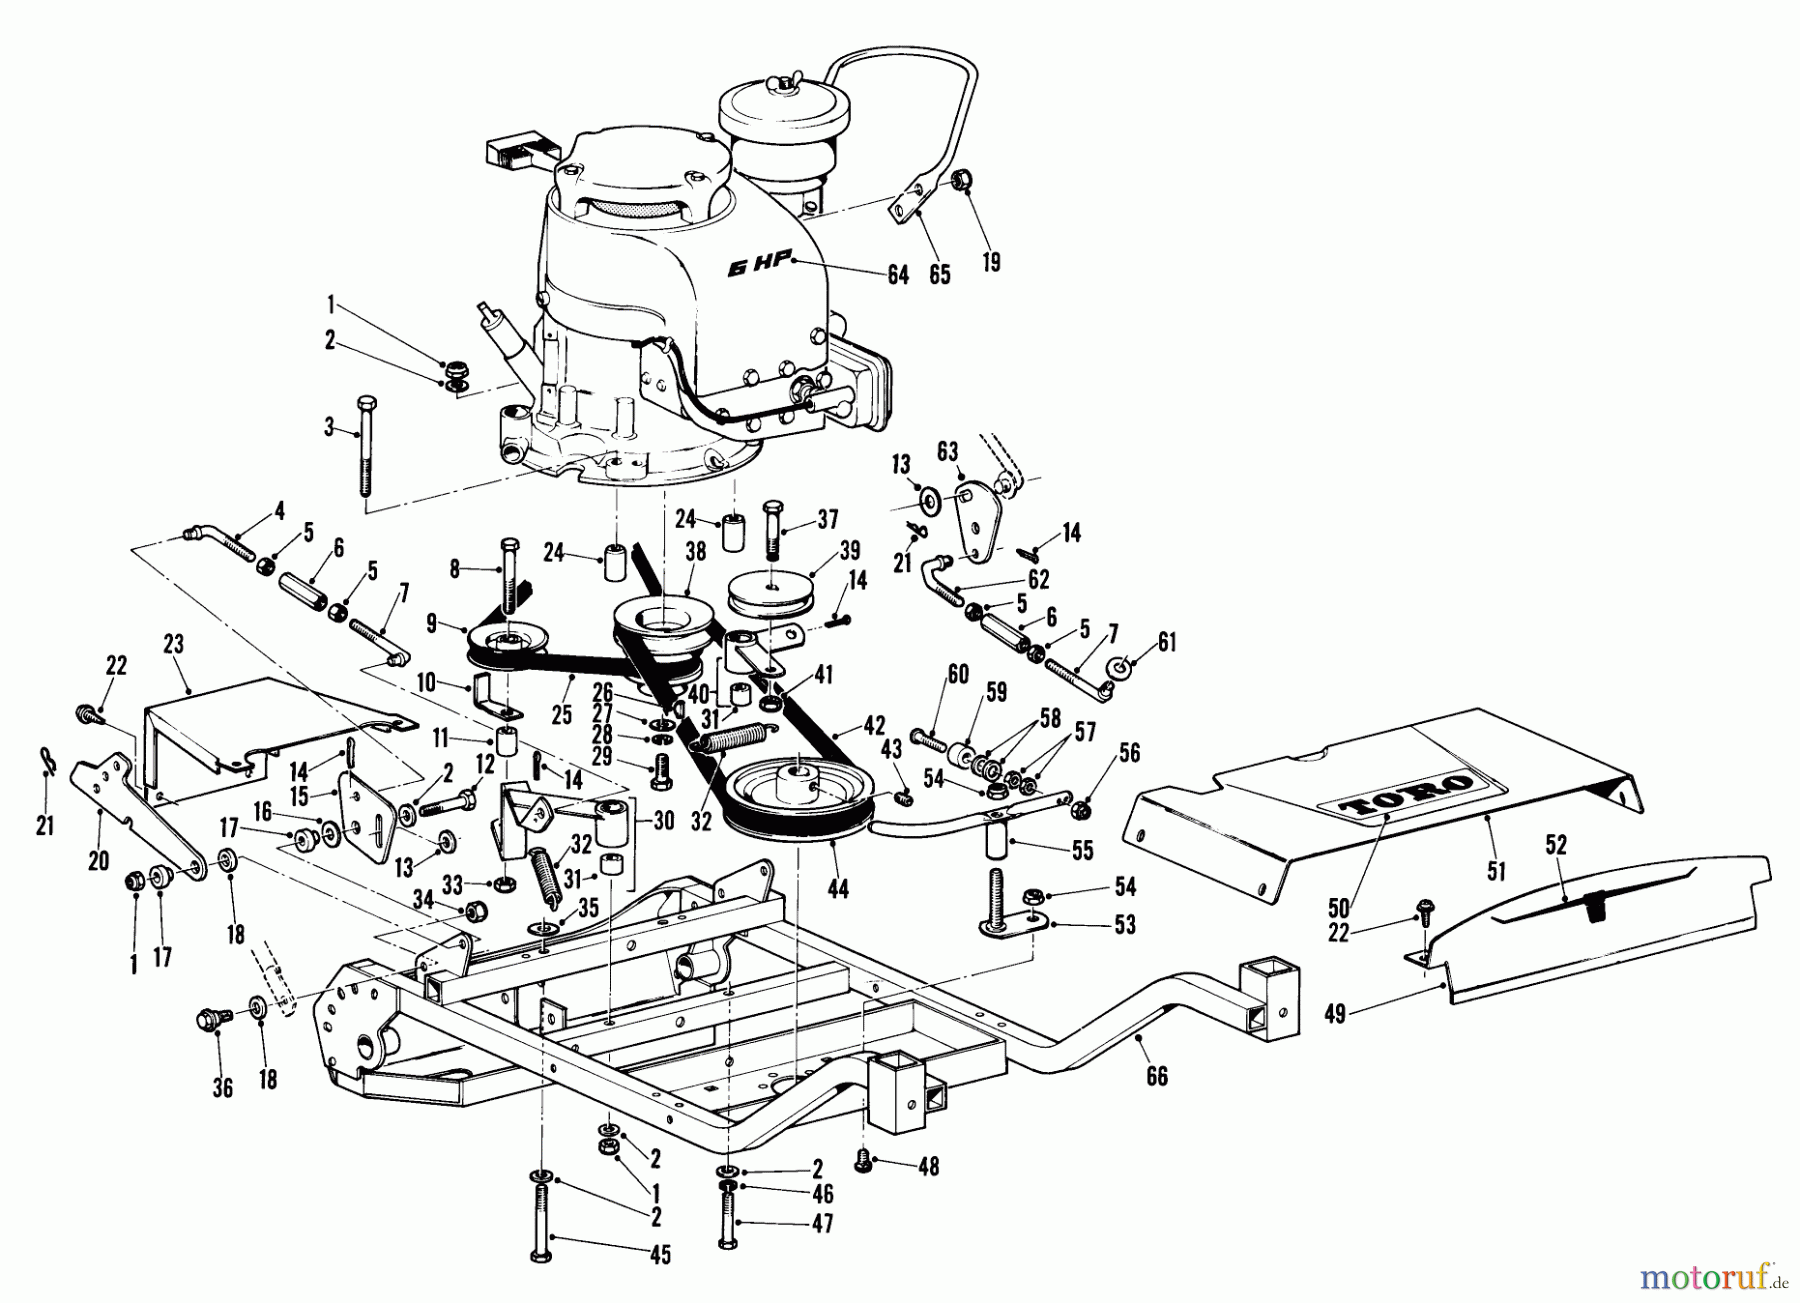  Toro Neu Mowers, Wide-Area Walk-Behind 23301 - Toro Lawnmower, 1967 (7000001-7999999) 25